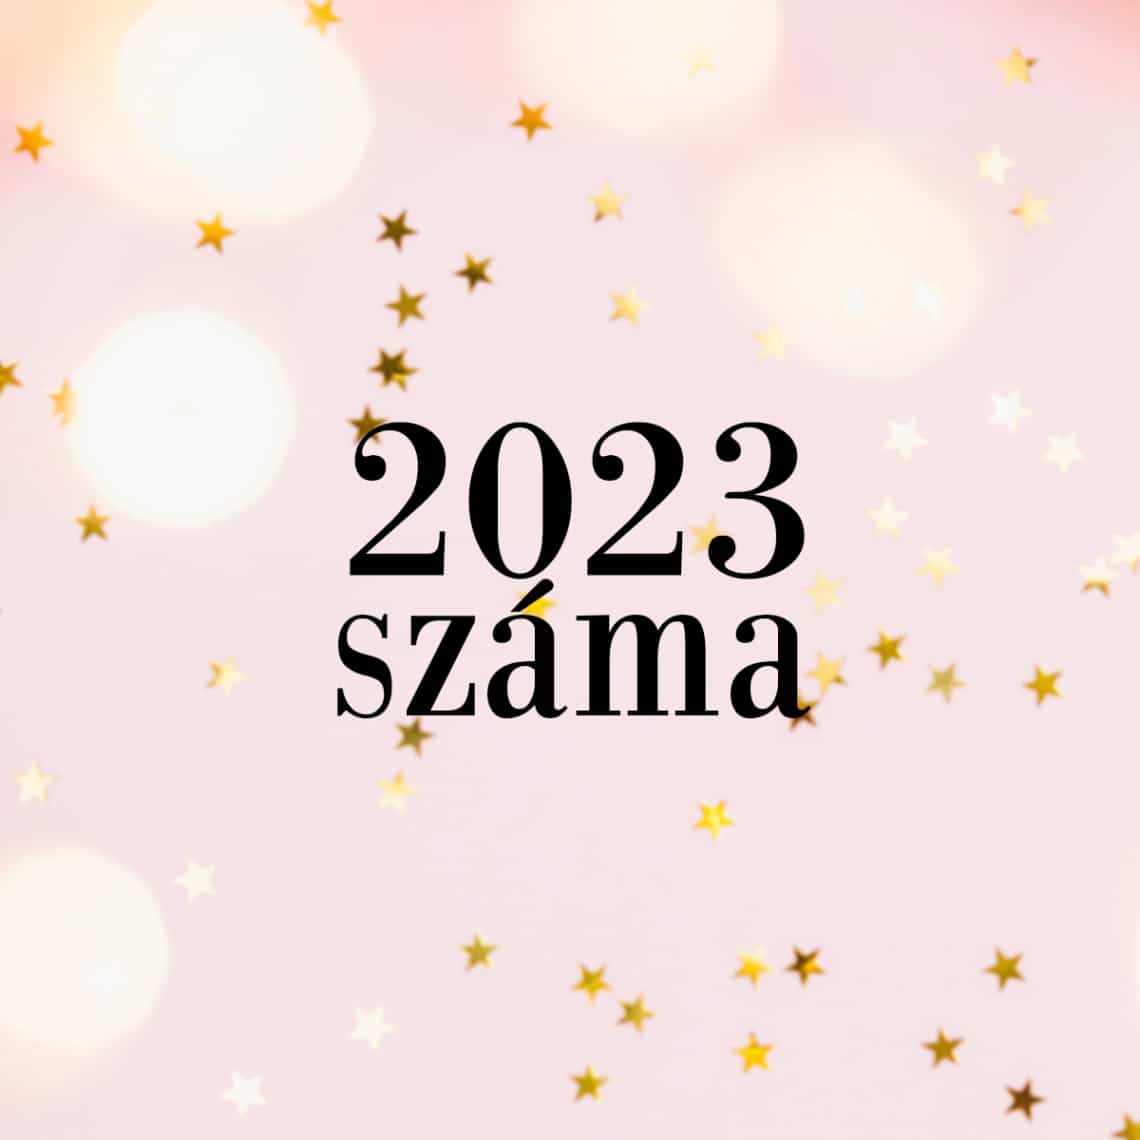 Hogyan számoljuk ki 2023 számát?